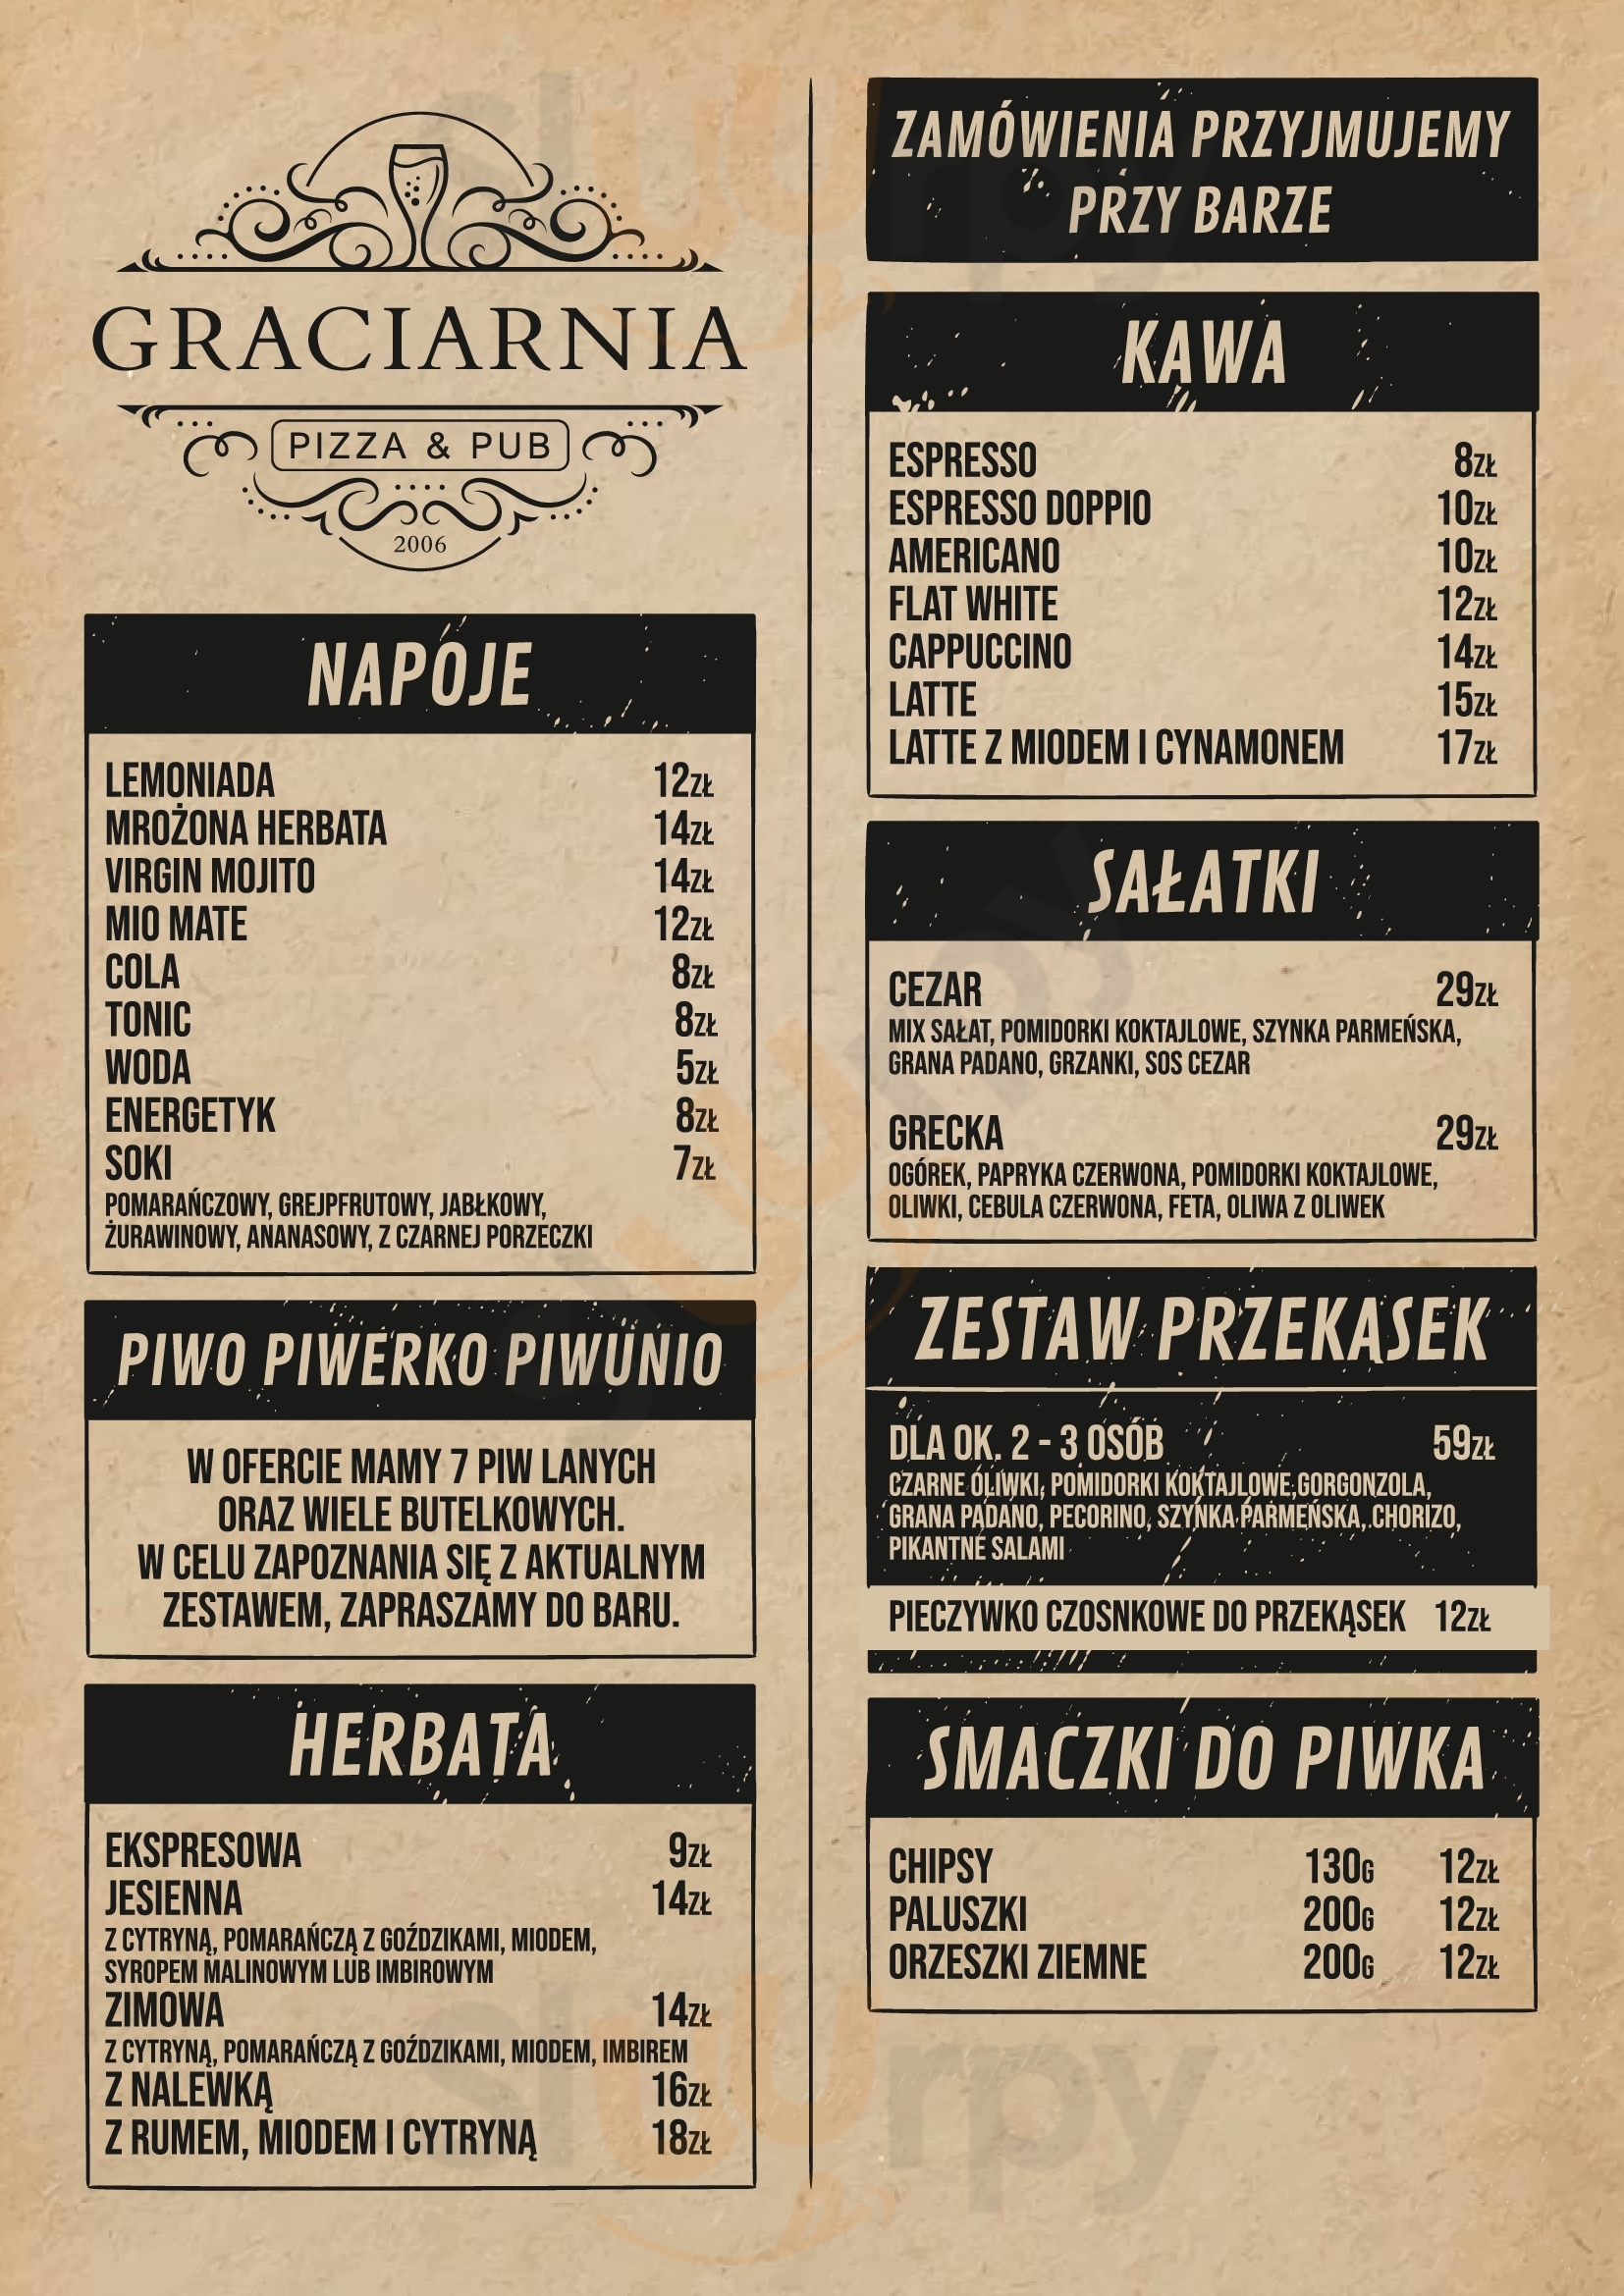 Graciarnia Pizza & Crafts Wrocław Menu - 1